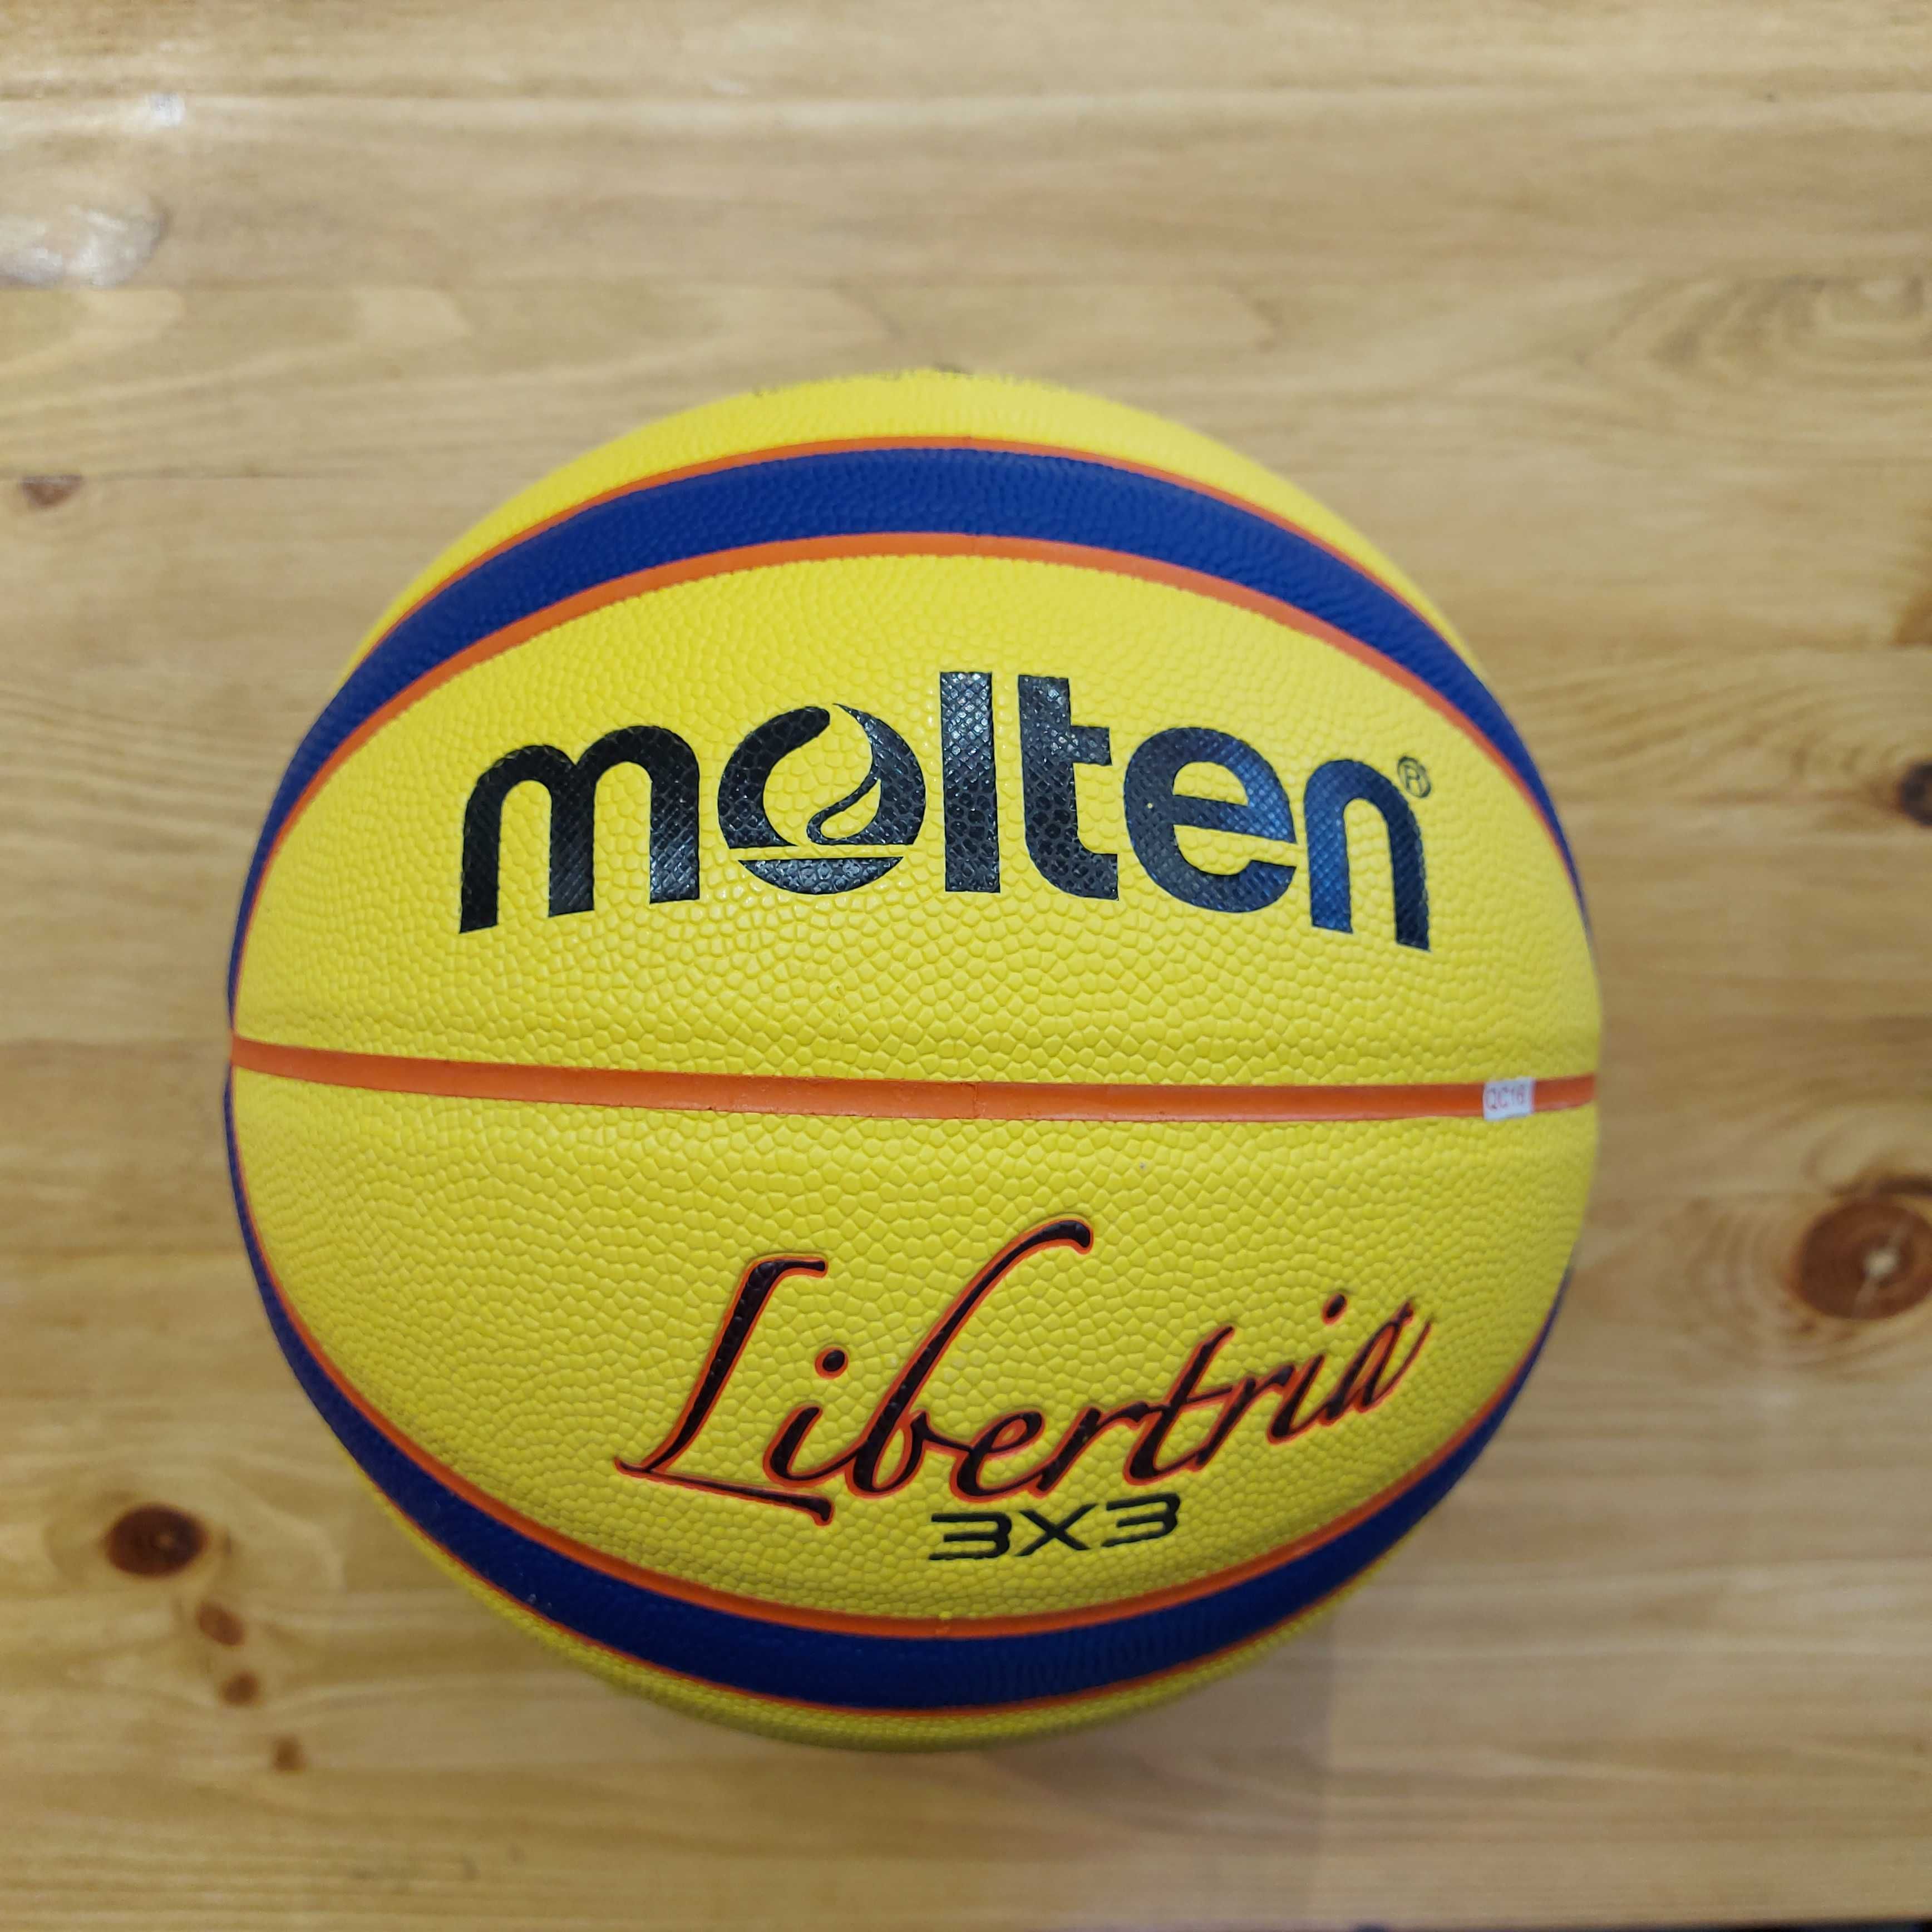 Оригинальный Баскетбольный мяч для стритбола Molten 3х3 Libertria